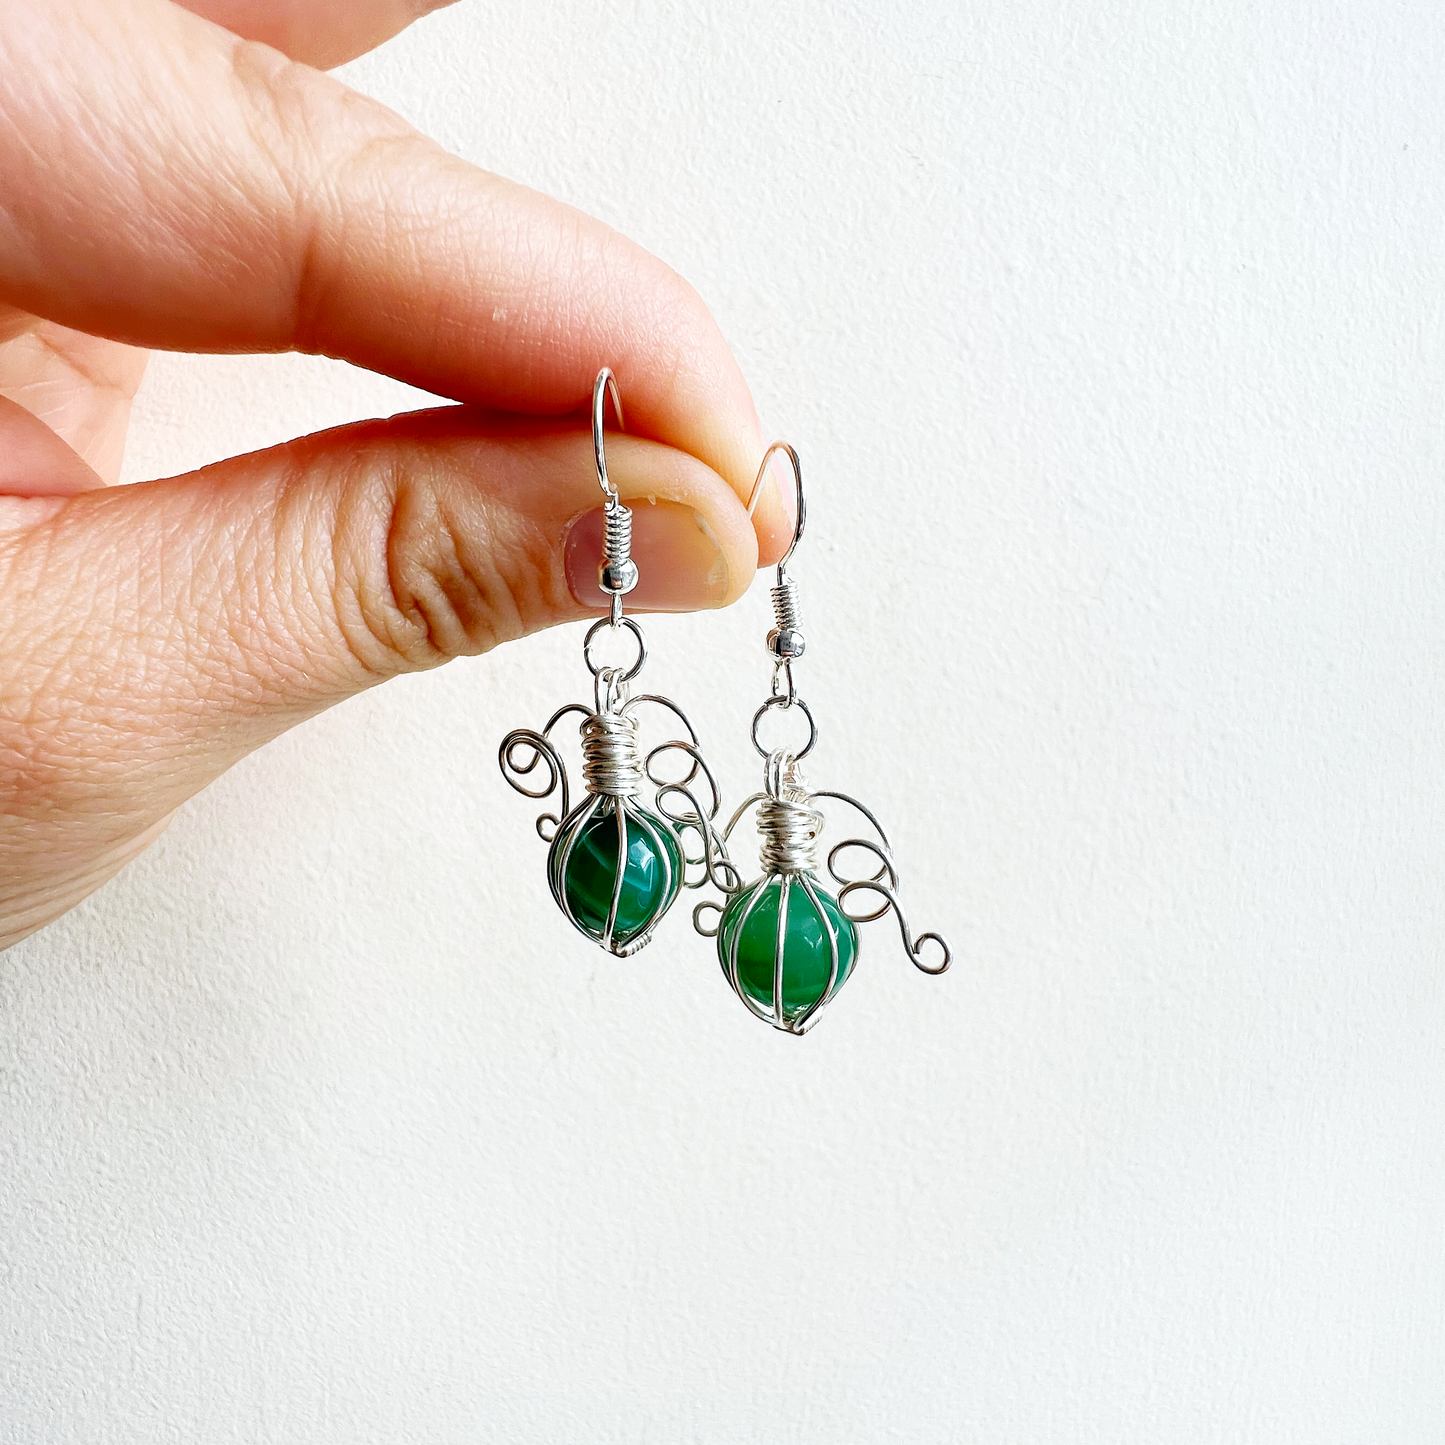 Green agate pumpkin earrings in silver